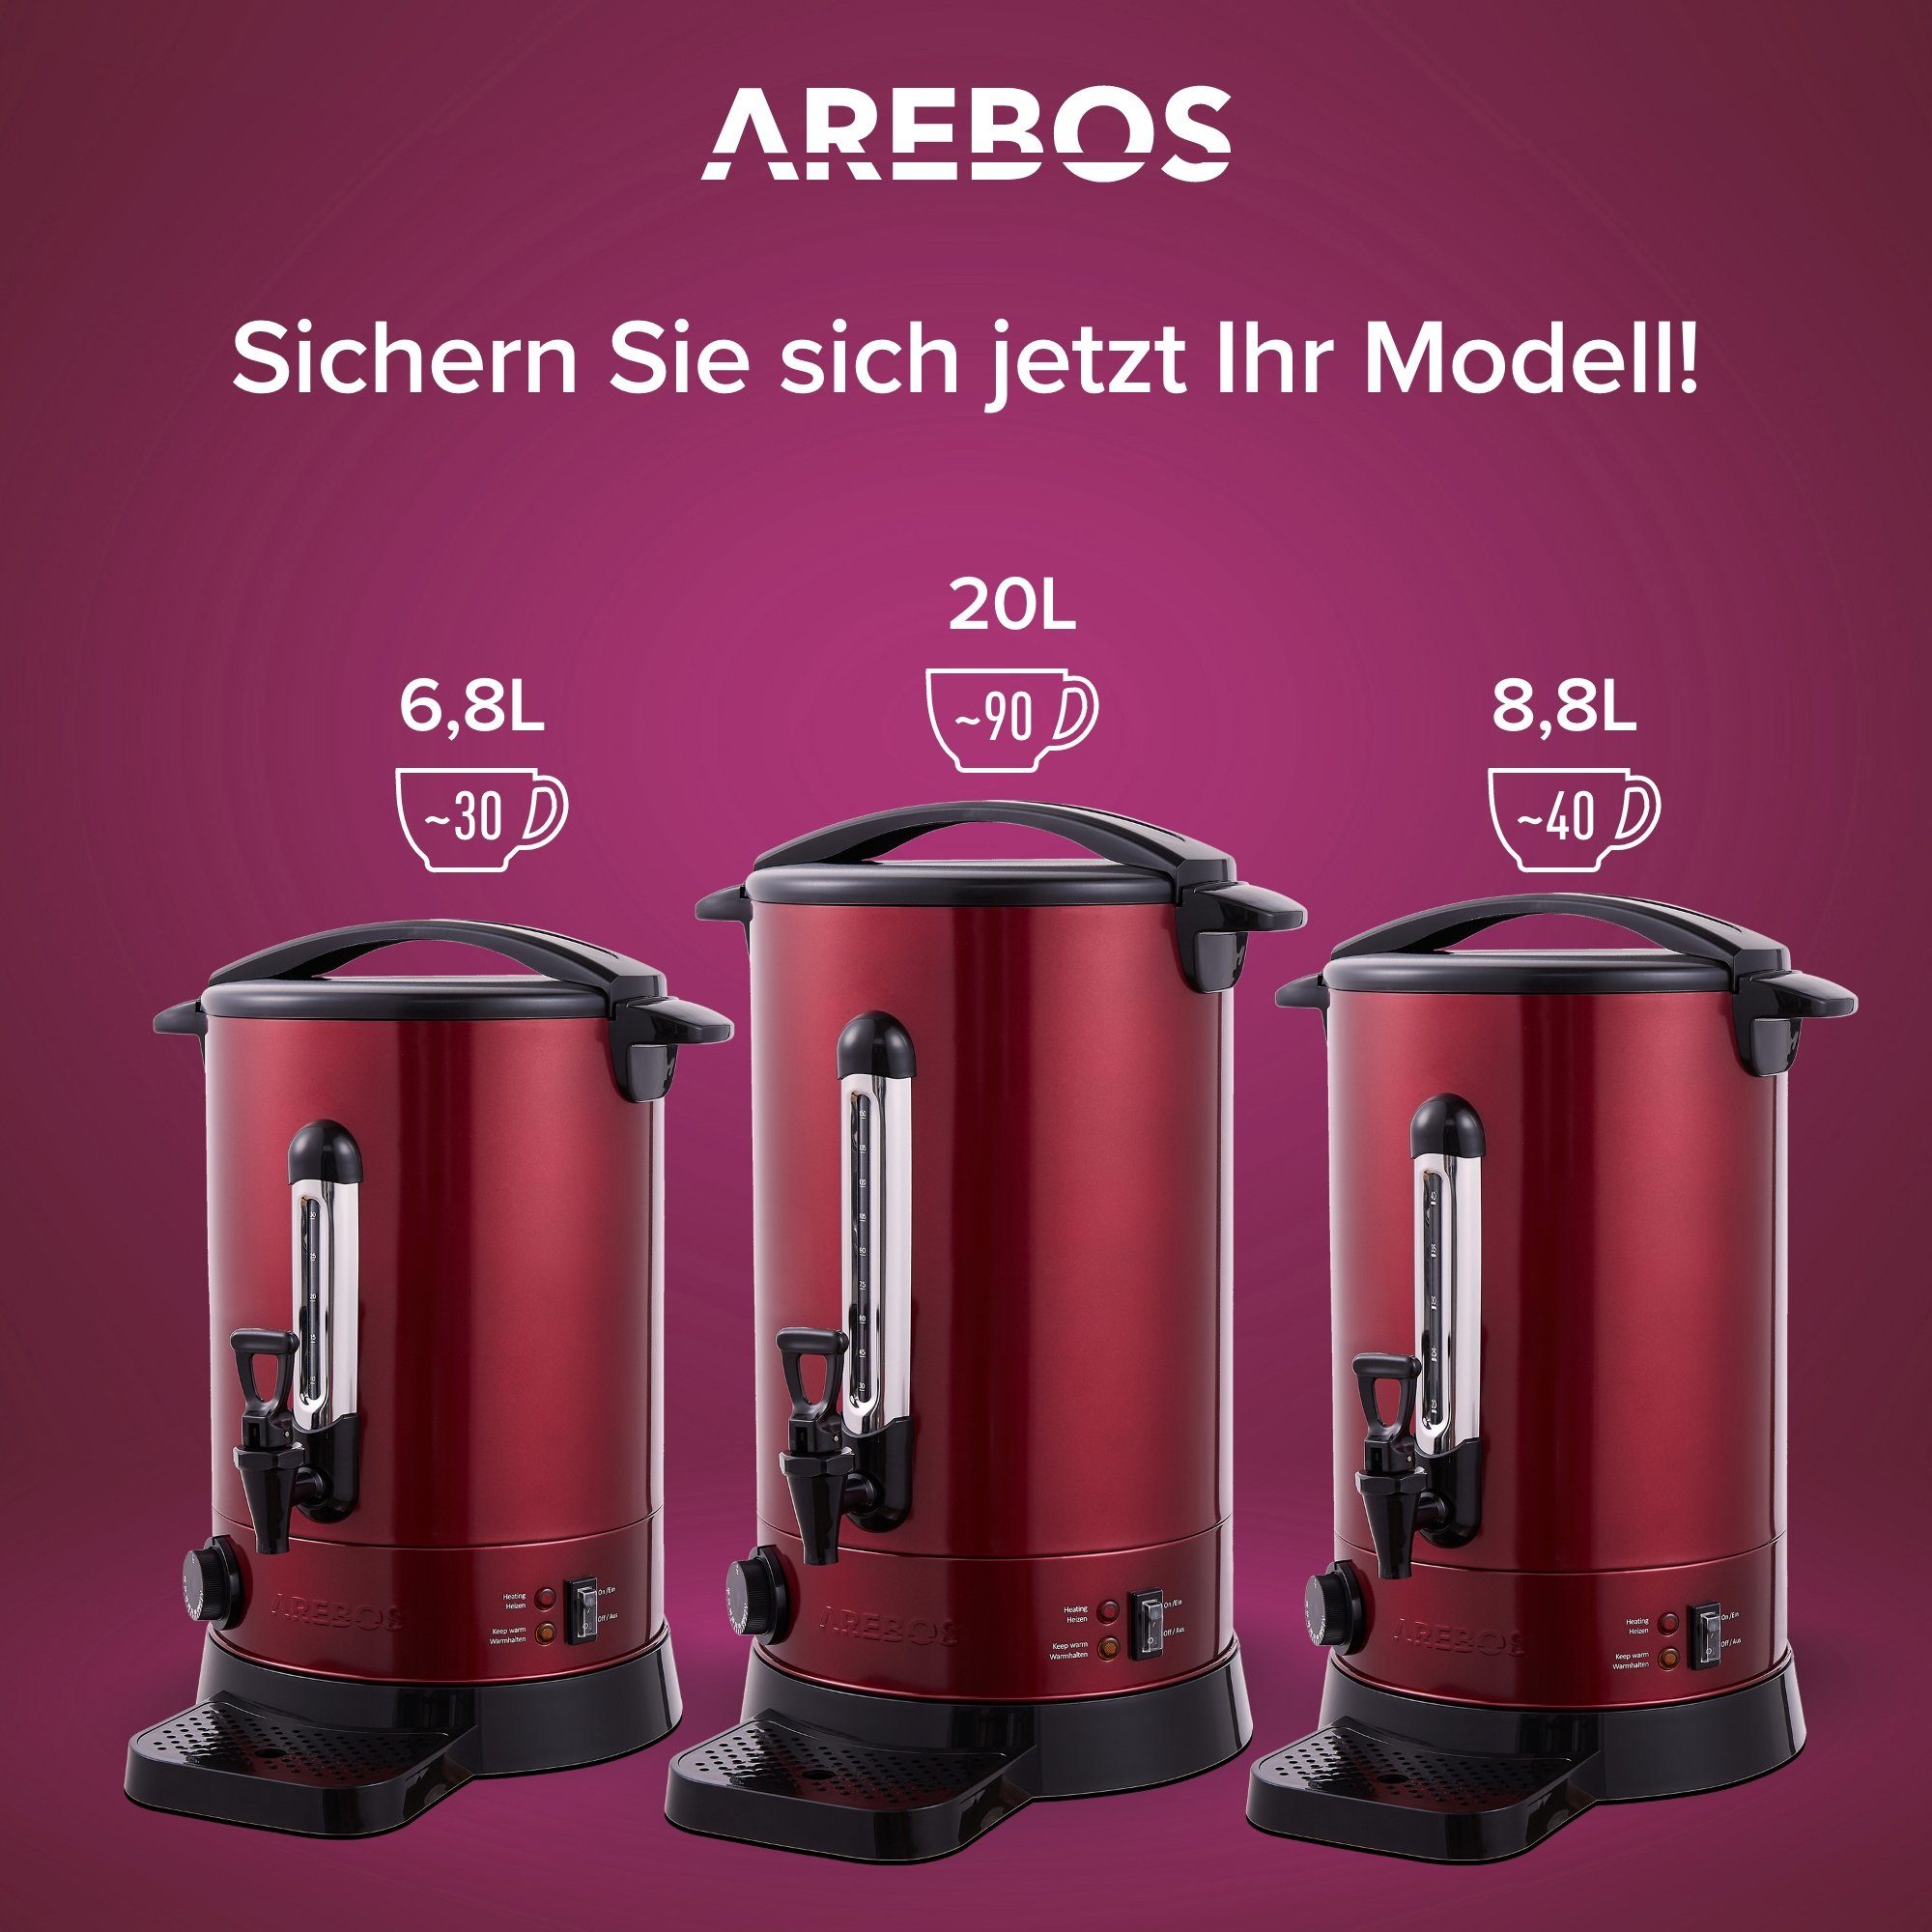 Temperatureinstellung Arebos und 20 Farben, rot 3 Überhitzungsschutz, Glühweinautomat 1650,00 30-110°C, W Einkoch- L,